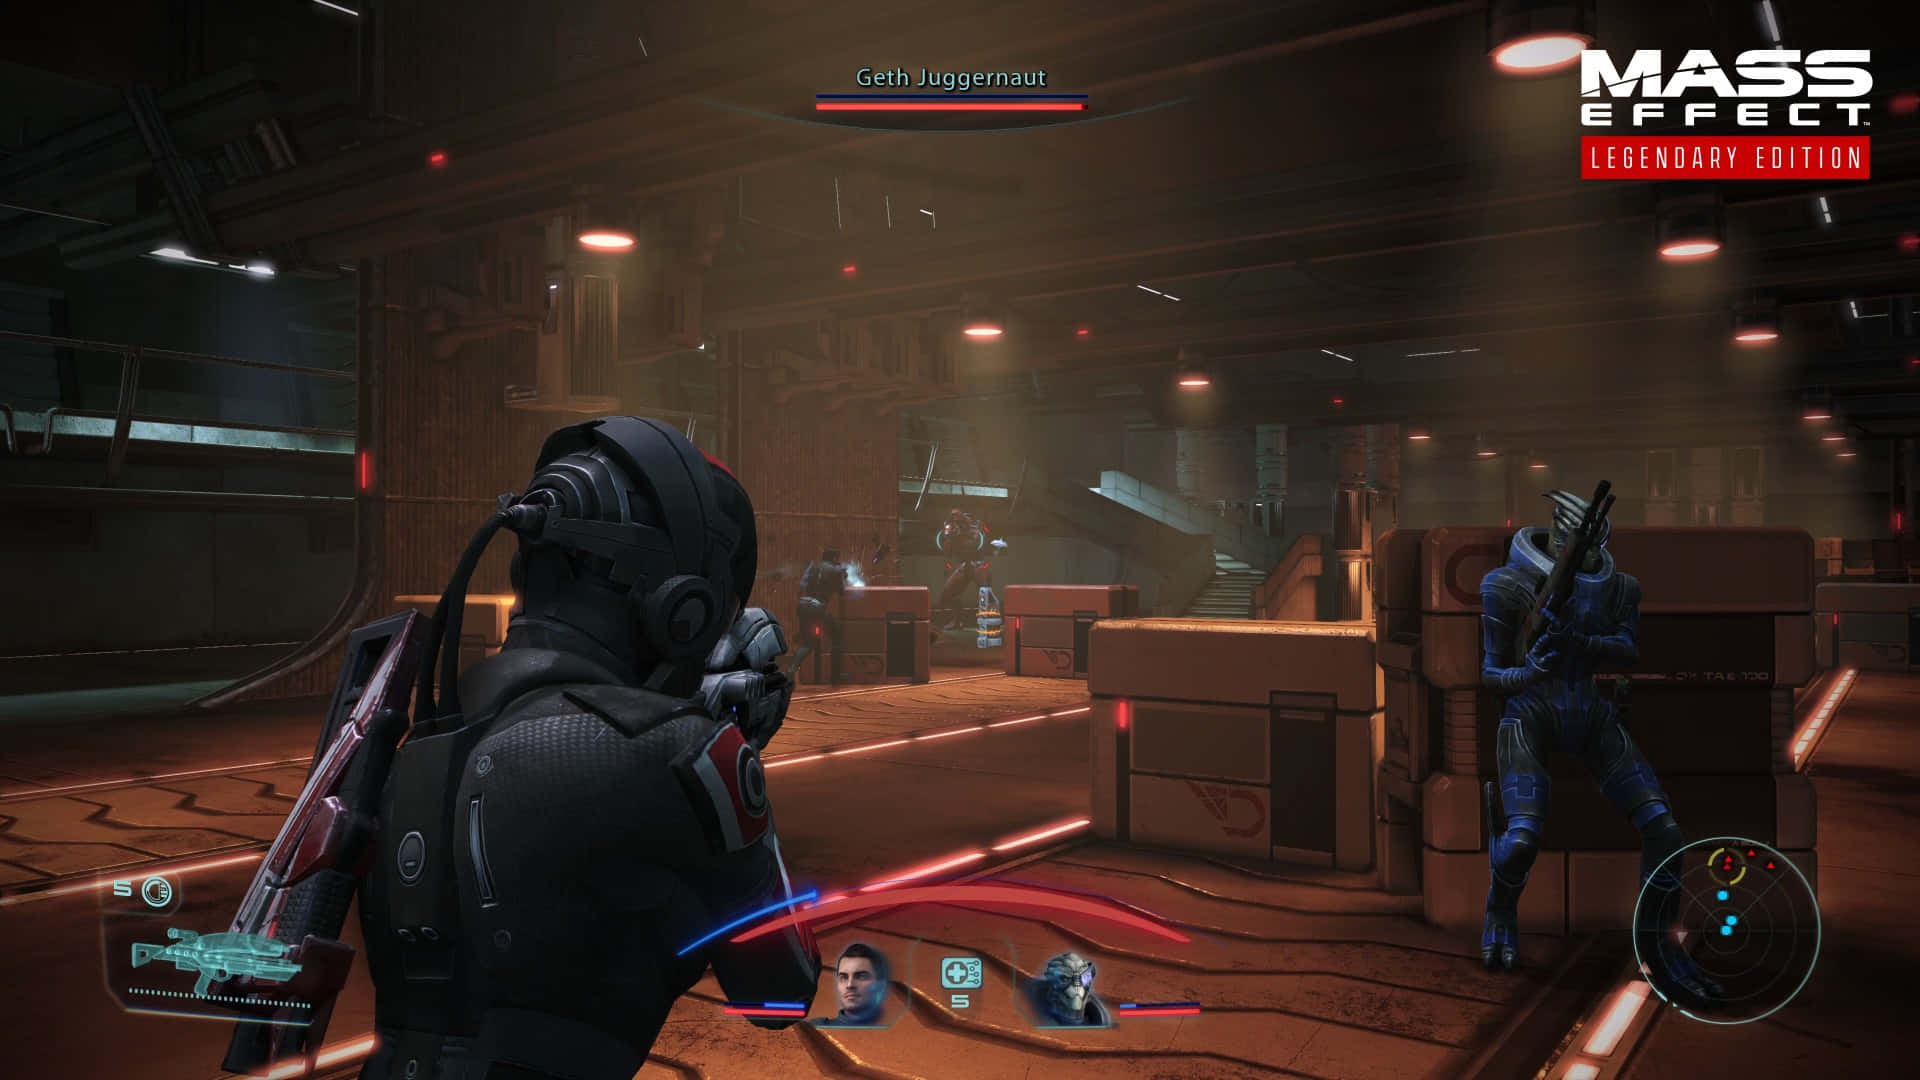 Elcomandante Shepard Y Su Tripulación Explorando Una Galaxia Lejana En Mass Effect.